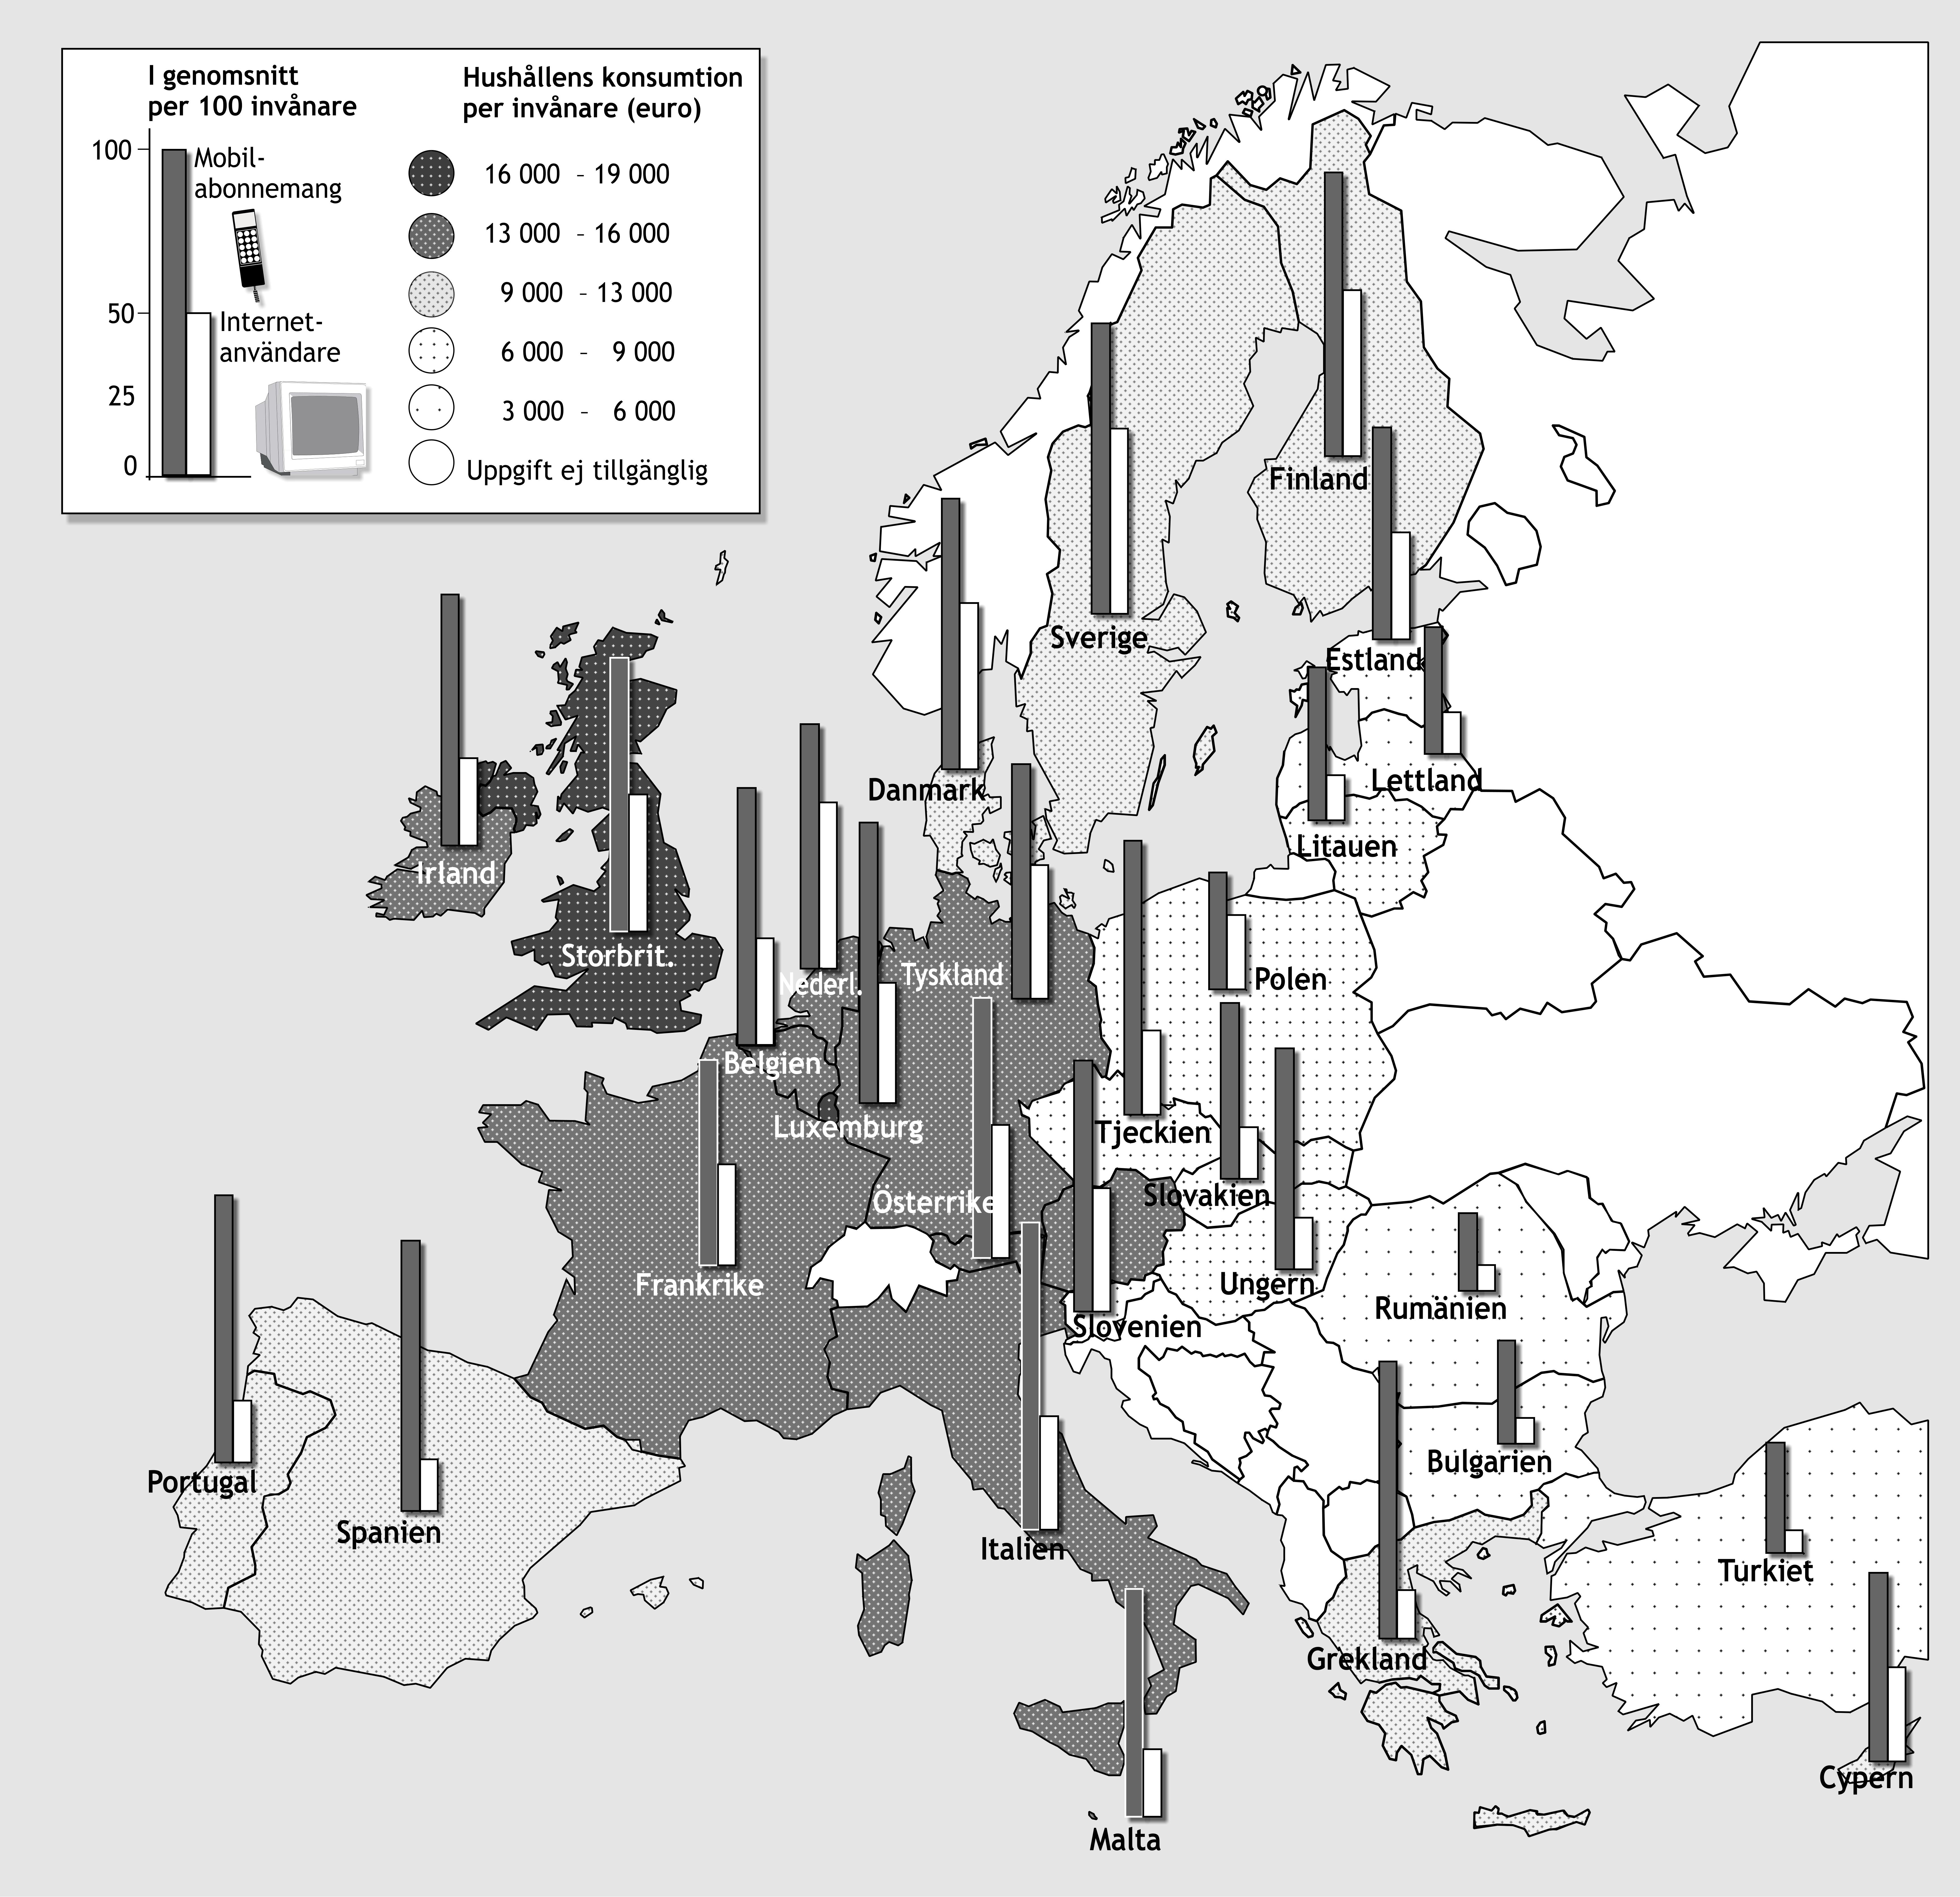 TK Mobiltelefoni och Internetanvändning i Europa 2004 ntalet mobilabonnemang respektive Internetanvändare per 100